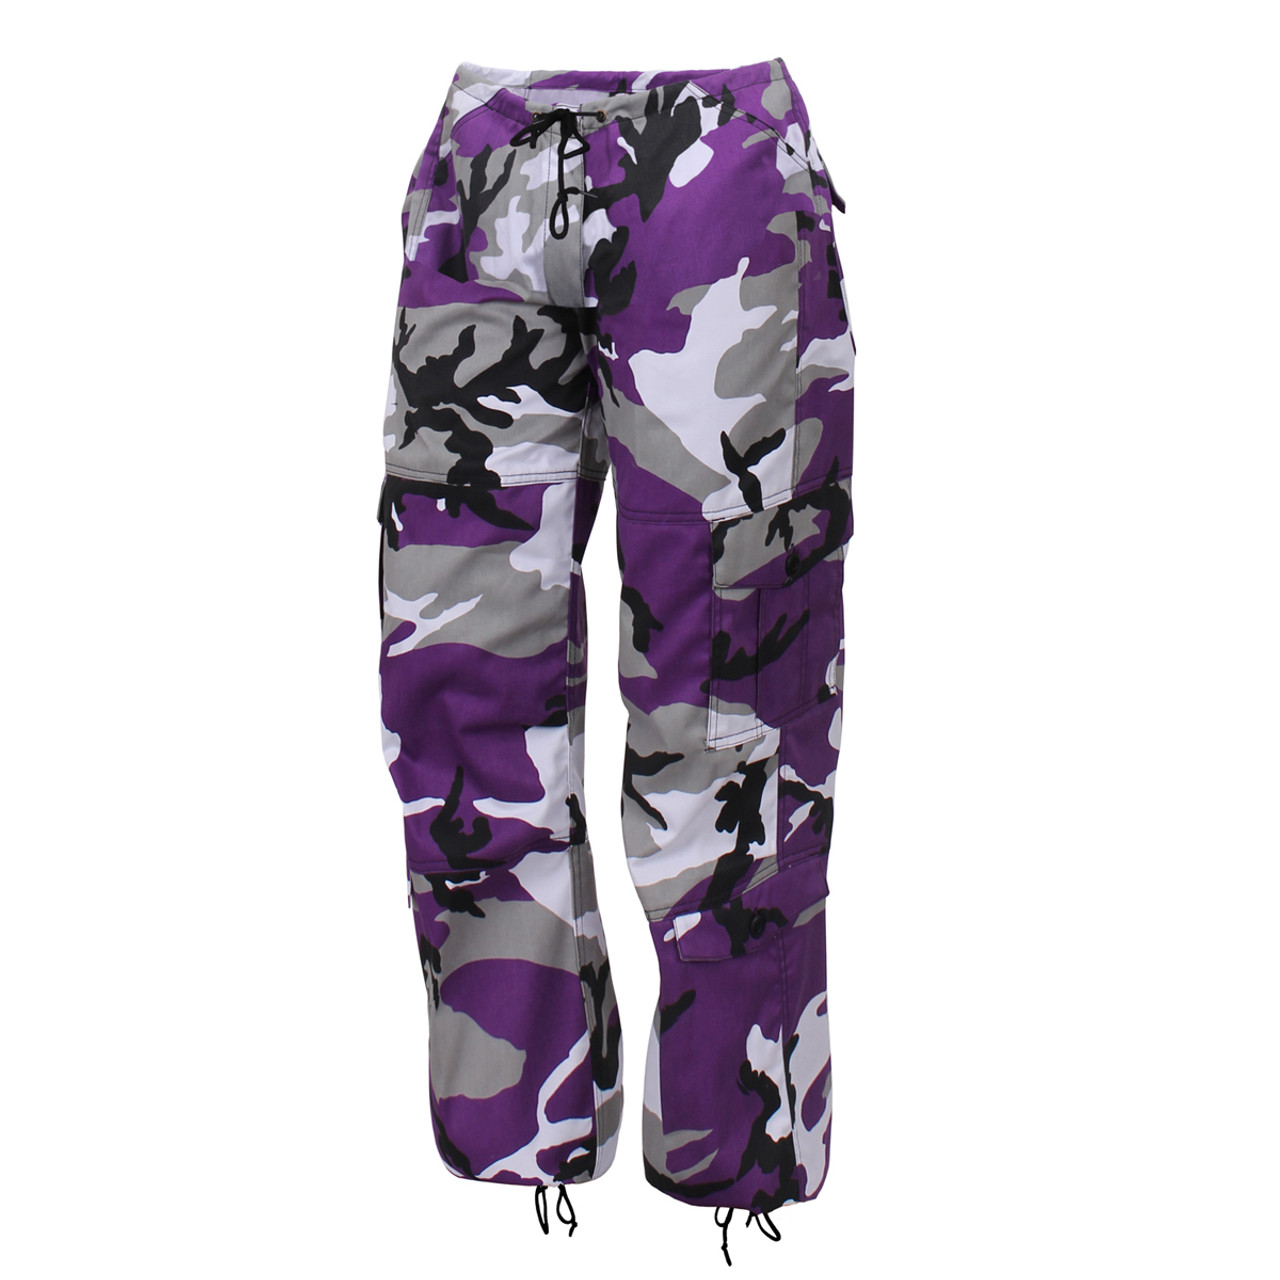 Shop Camo Colors BDU Fatigue Pants - Fatigues Army Navy